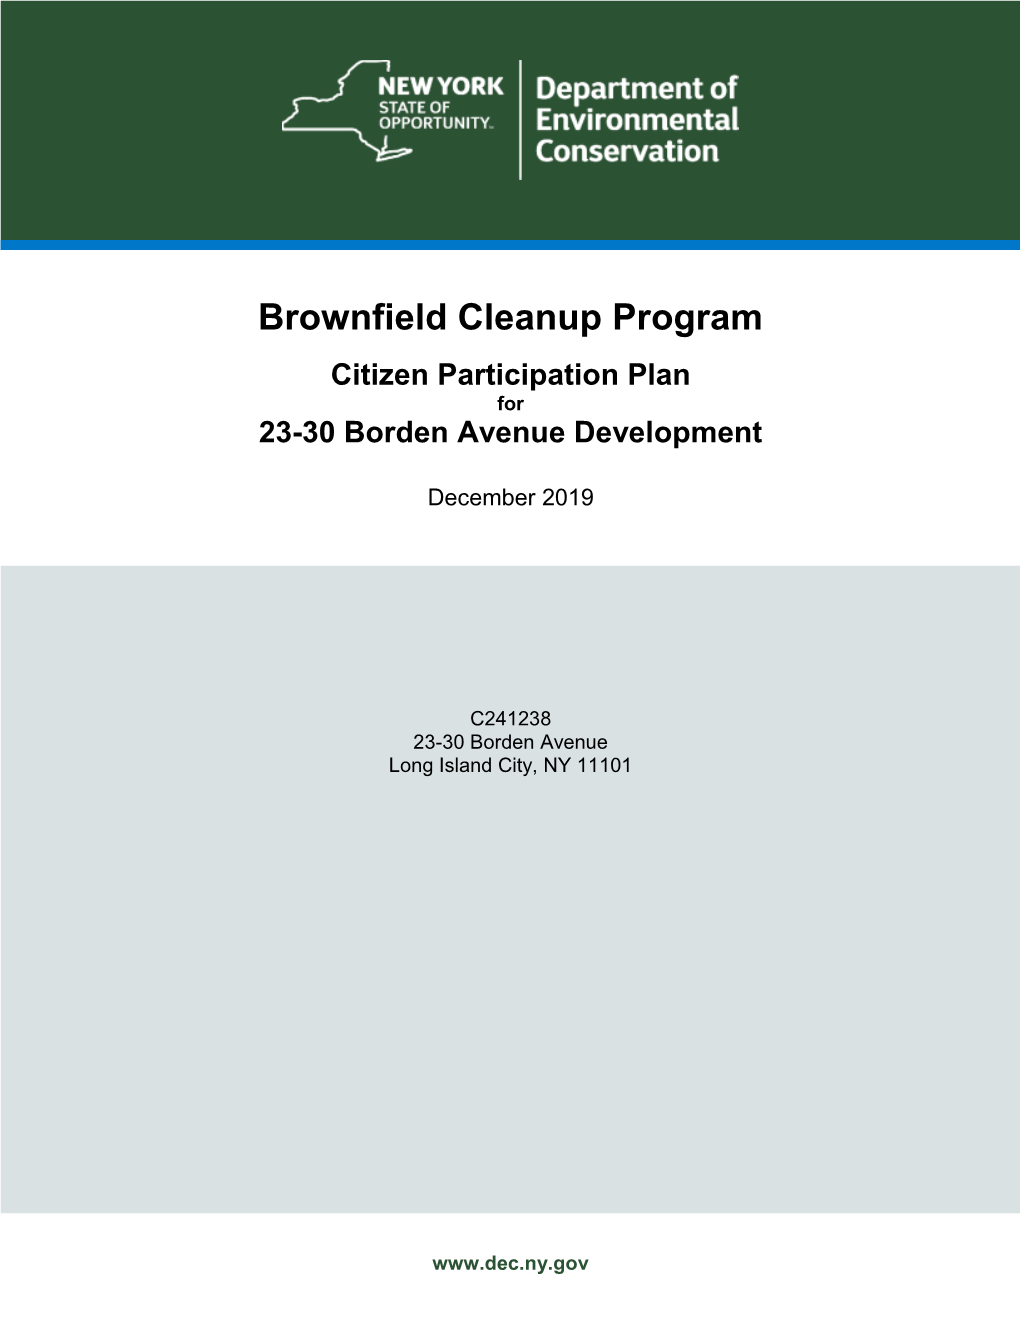 Brownfield Cleanup Program Citizen Participation Plan for 23-30 Borden Avenue Development